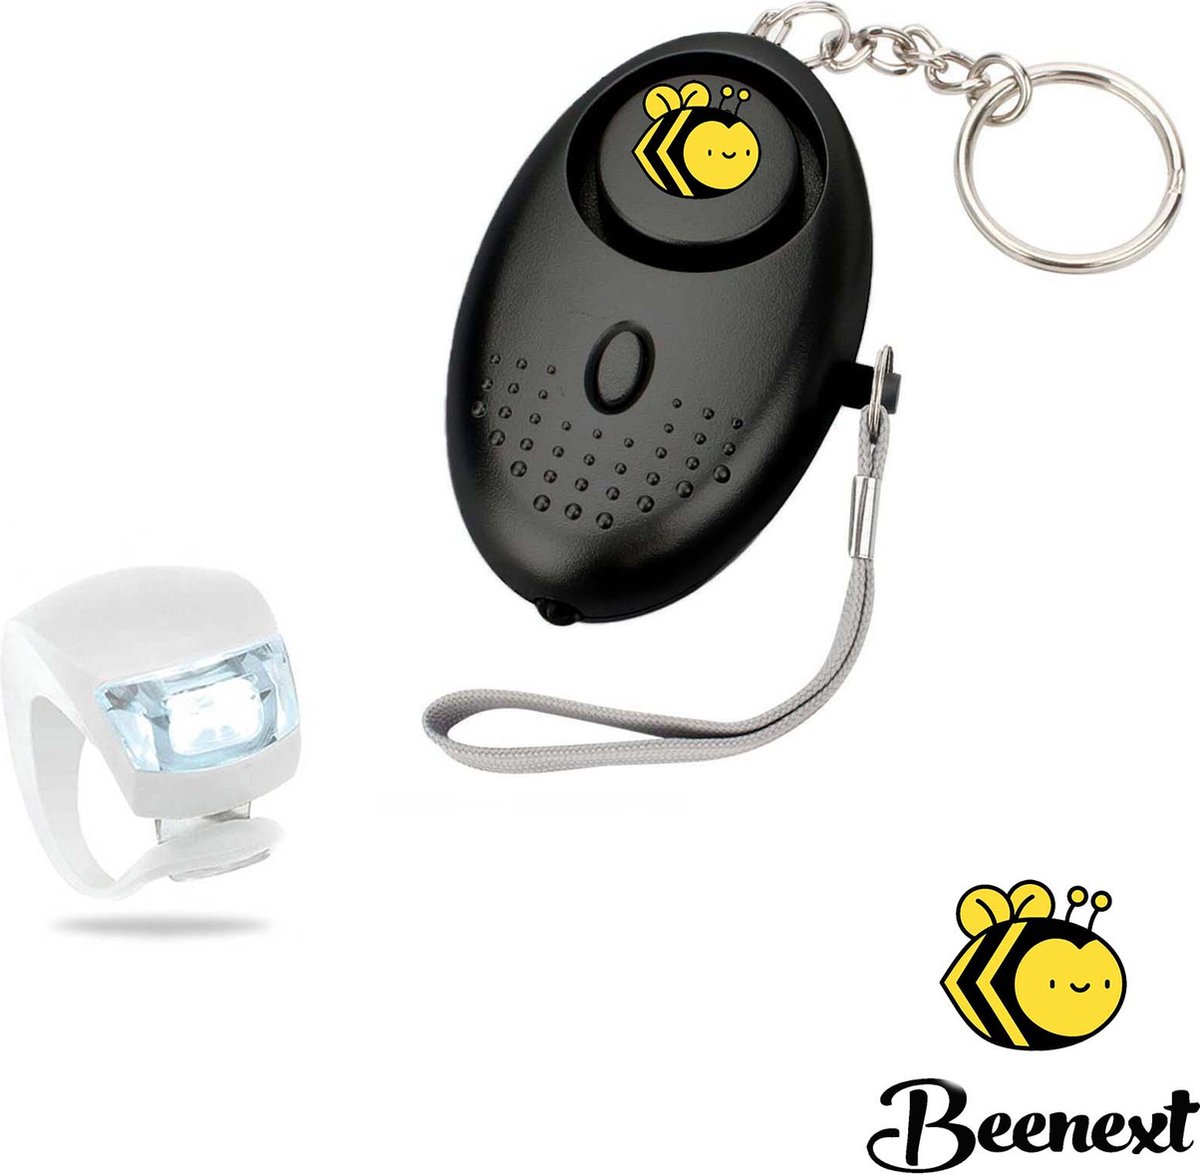 Senioren Alarm x1 Gratis Fietslampjes LED - Persoonlijk Alarmknop - Sleutelhanger Alarmsysteem - 130DB Geluid - Draadloos Personal Alarm -  Beveiliging Alarm - Zelfverdediging - Veiligheid Alarm - Persoonlijke Alarmen - Incl. Batterij - Merkloos